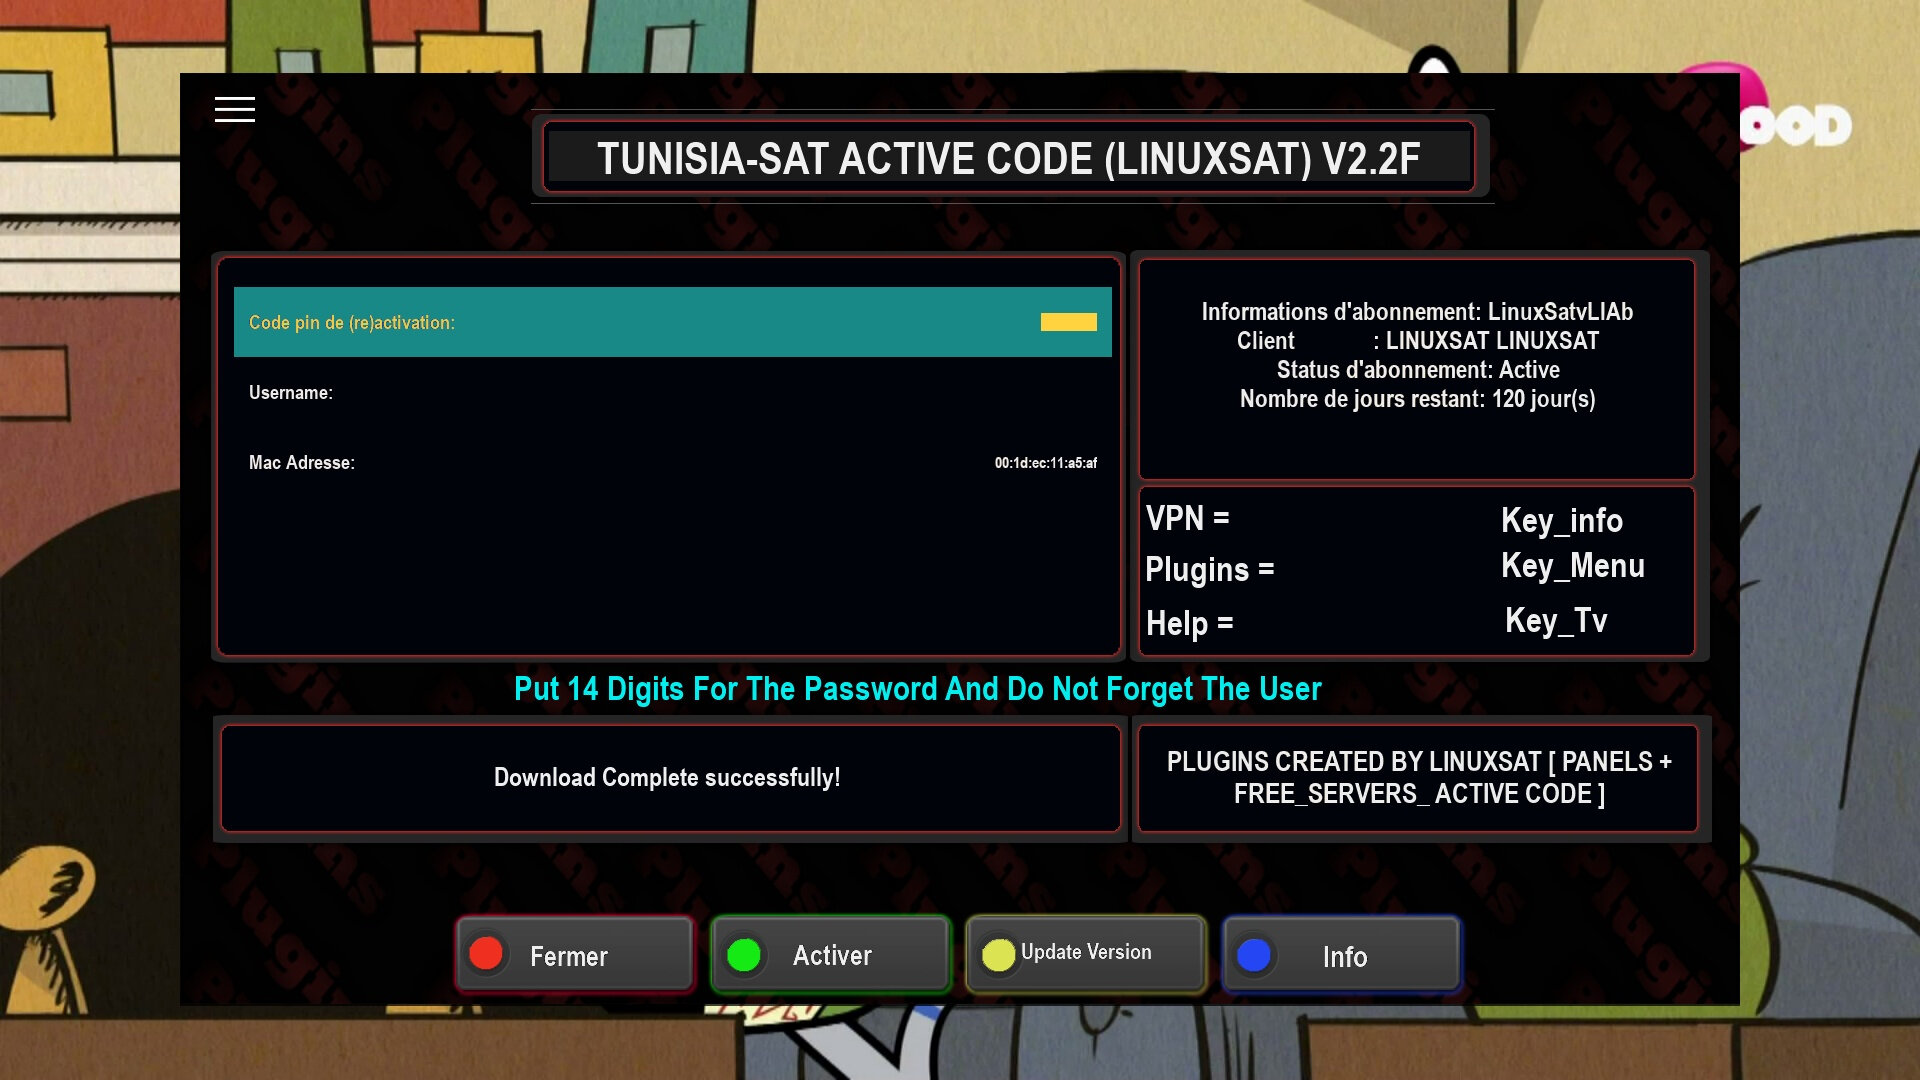 plugin cams tunisiasat active code lh5d.jpg